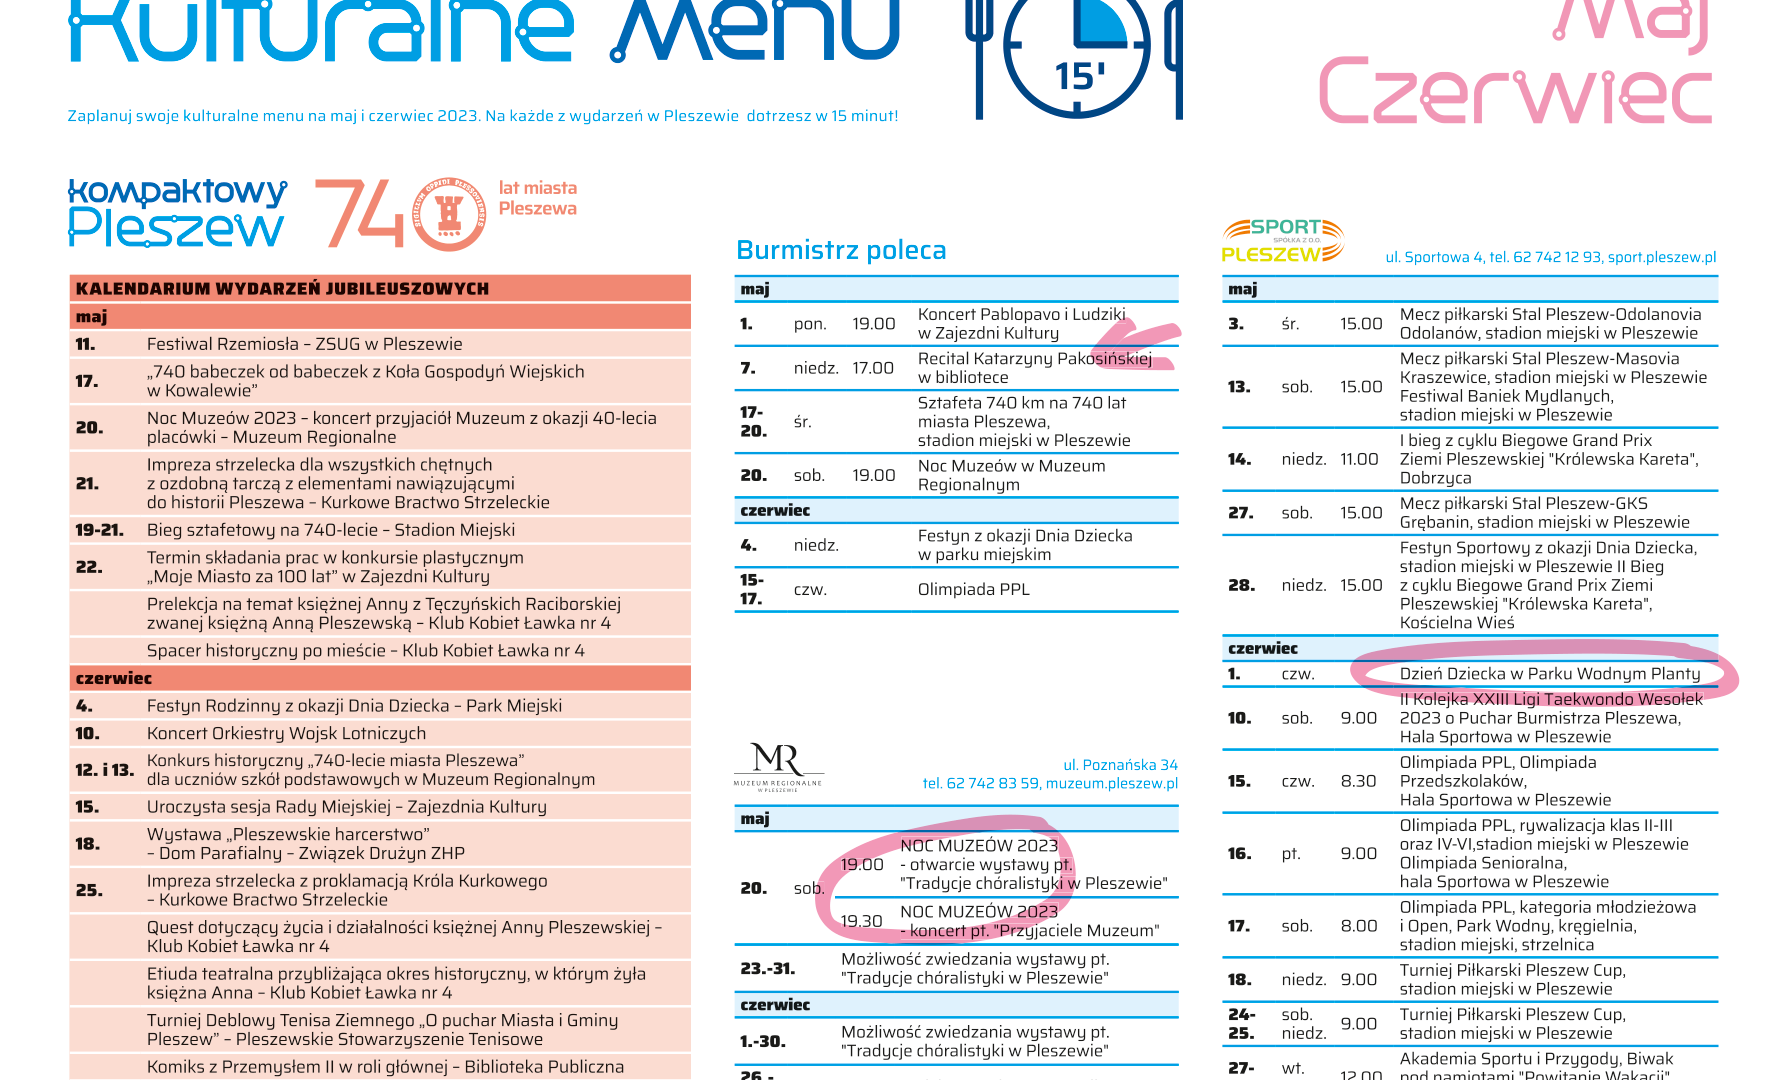 Grafika przedstawia Kulturalne menu na miesiące maj i czerwiec w Pleszewie.